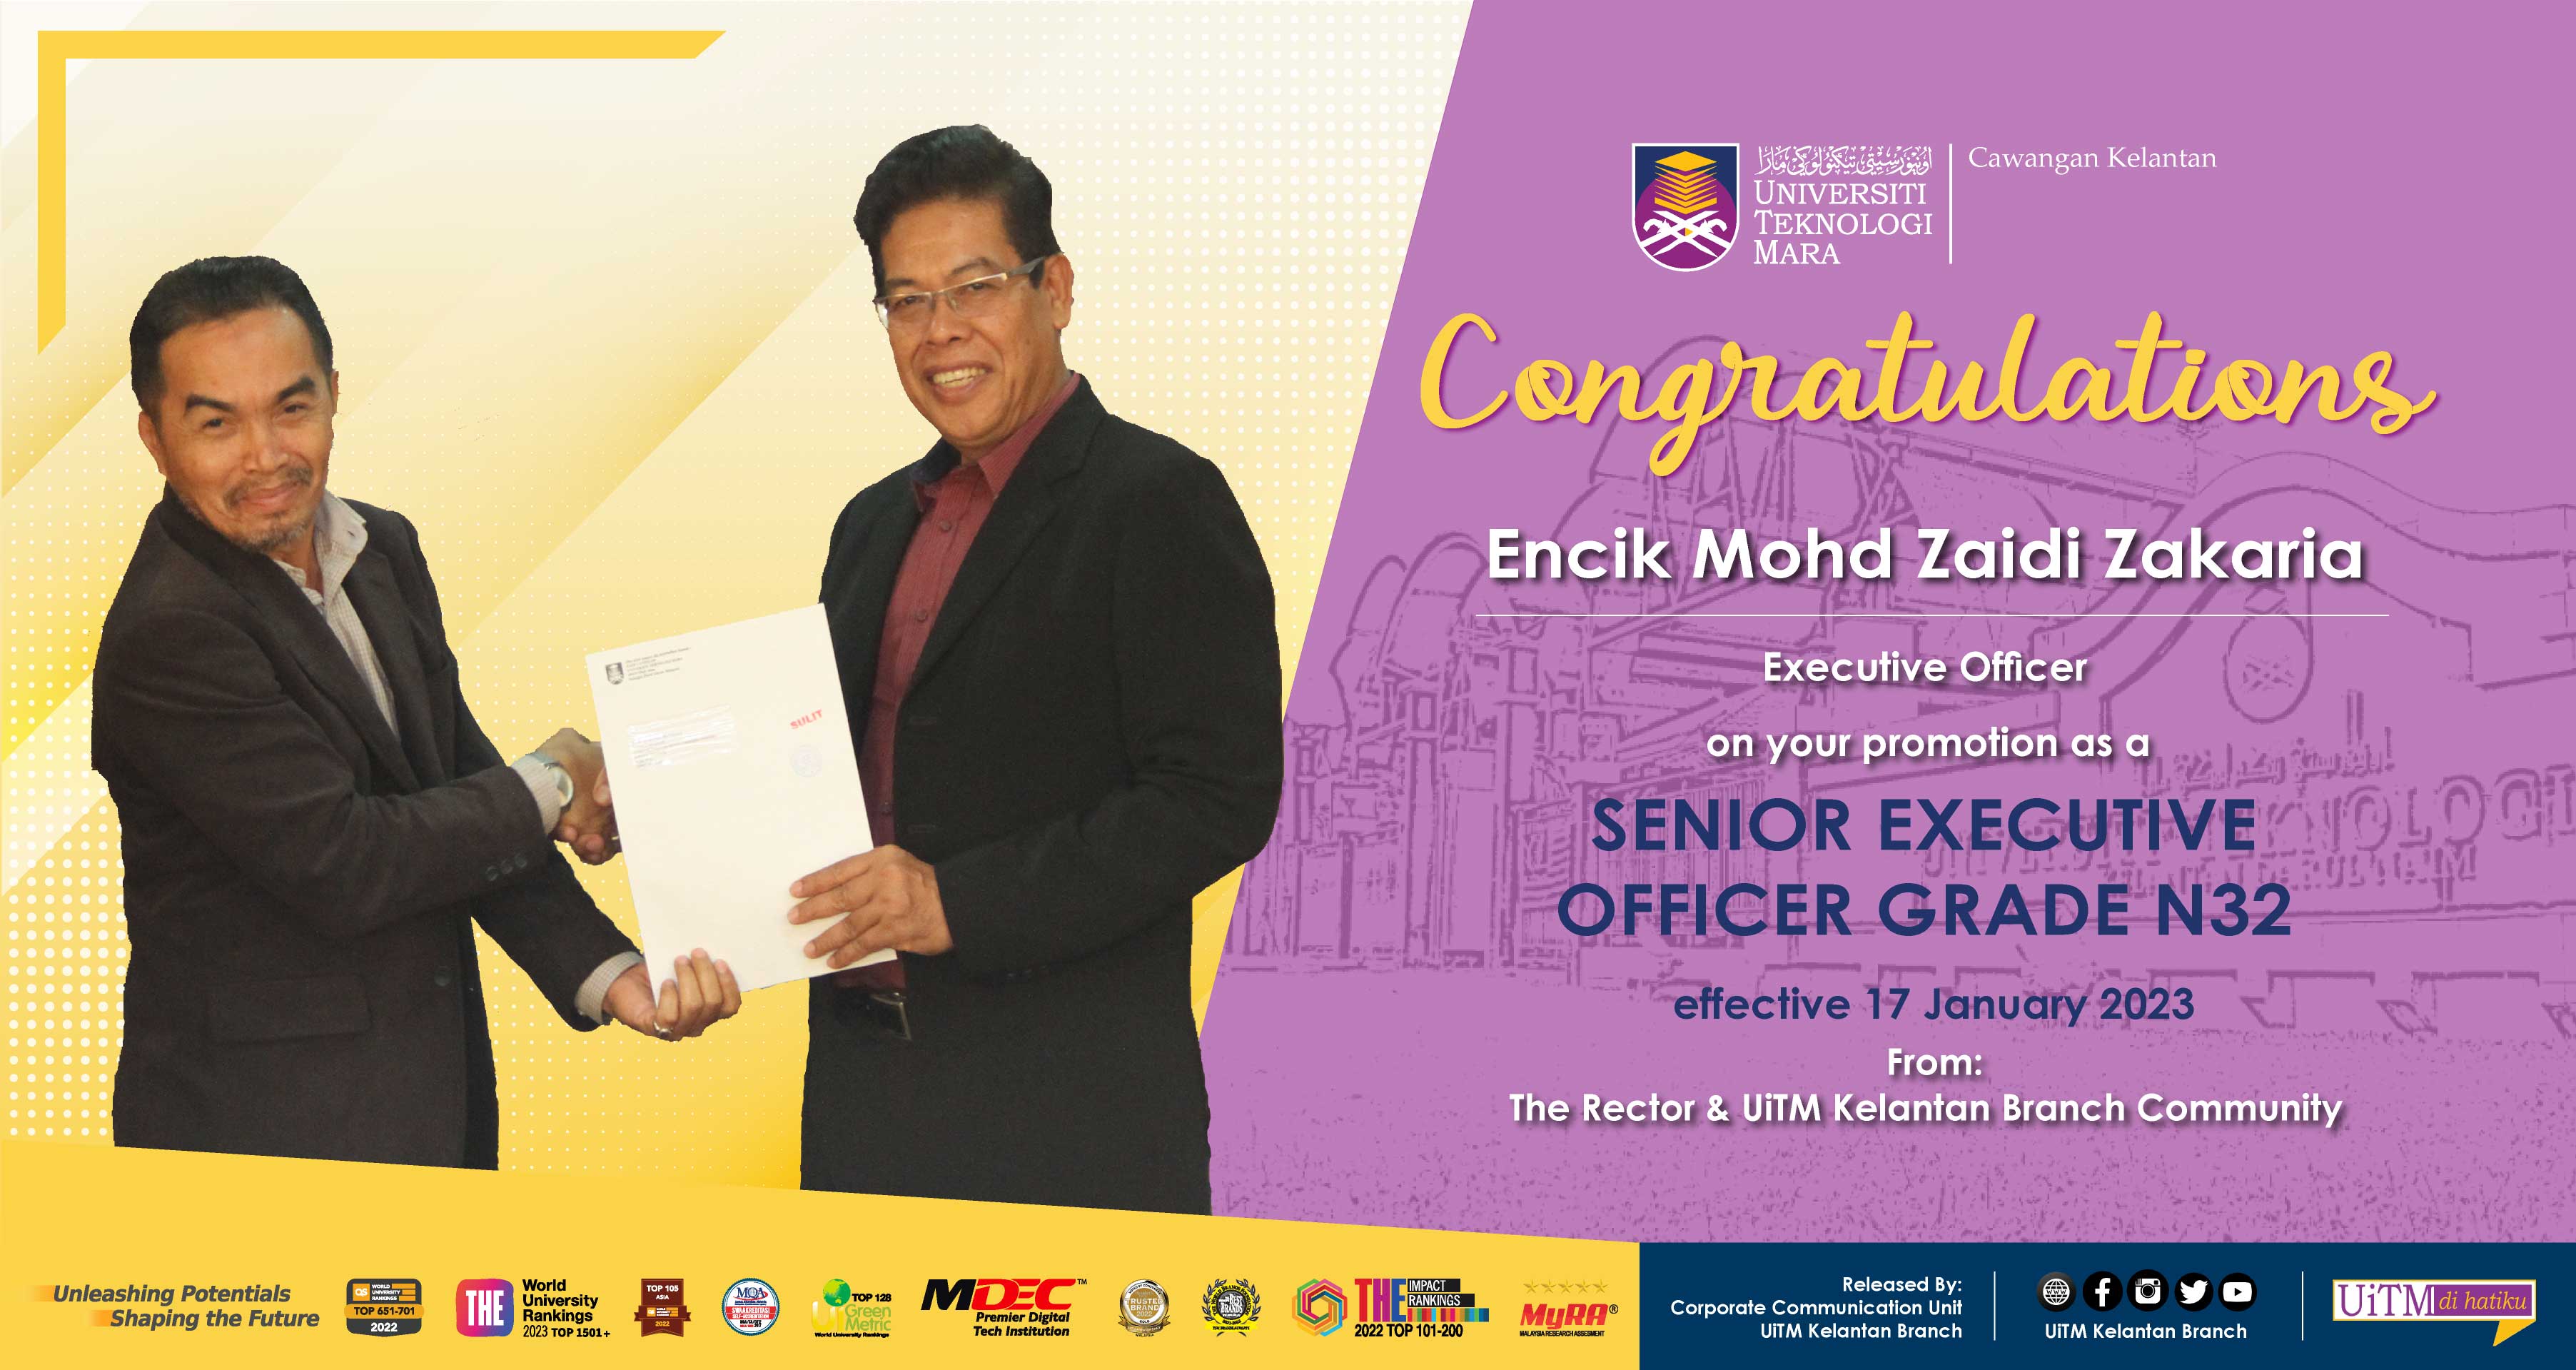 Congratulations!!! Encik Mohd Zaidi Zakaria, Senior Executive Officer Grade N32